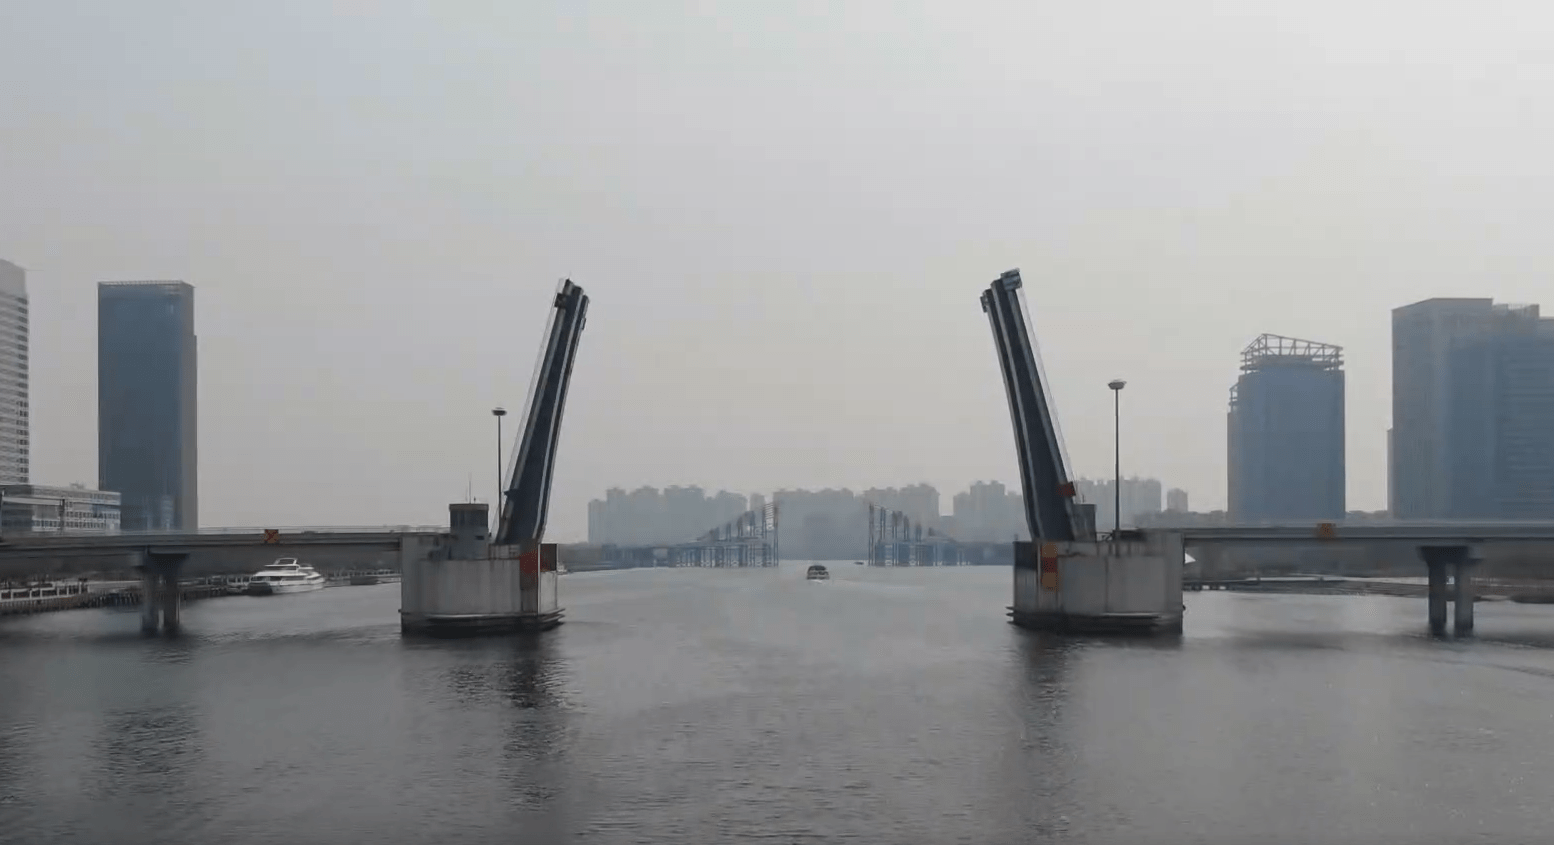 发现滨海之最海河开启桥世界上最大的立转式开启桥之一